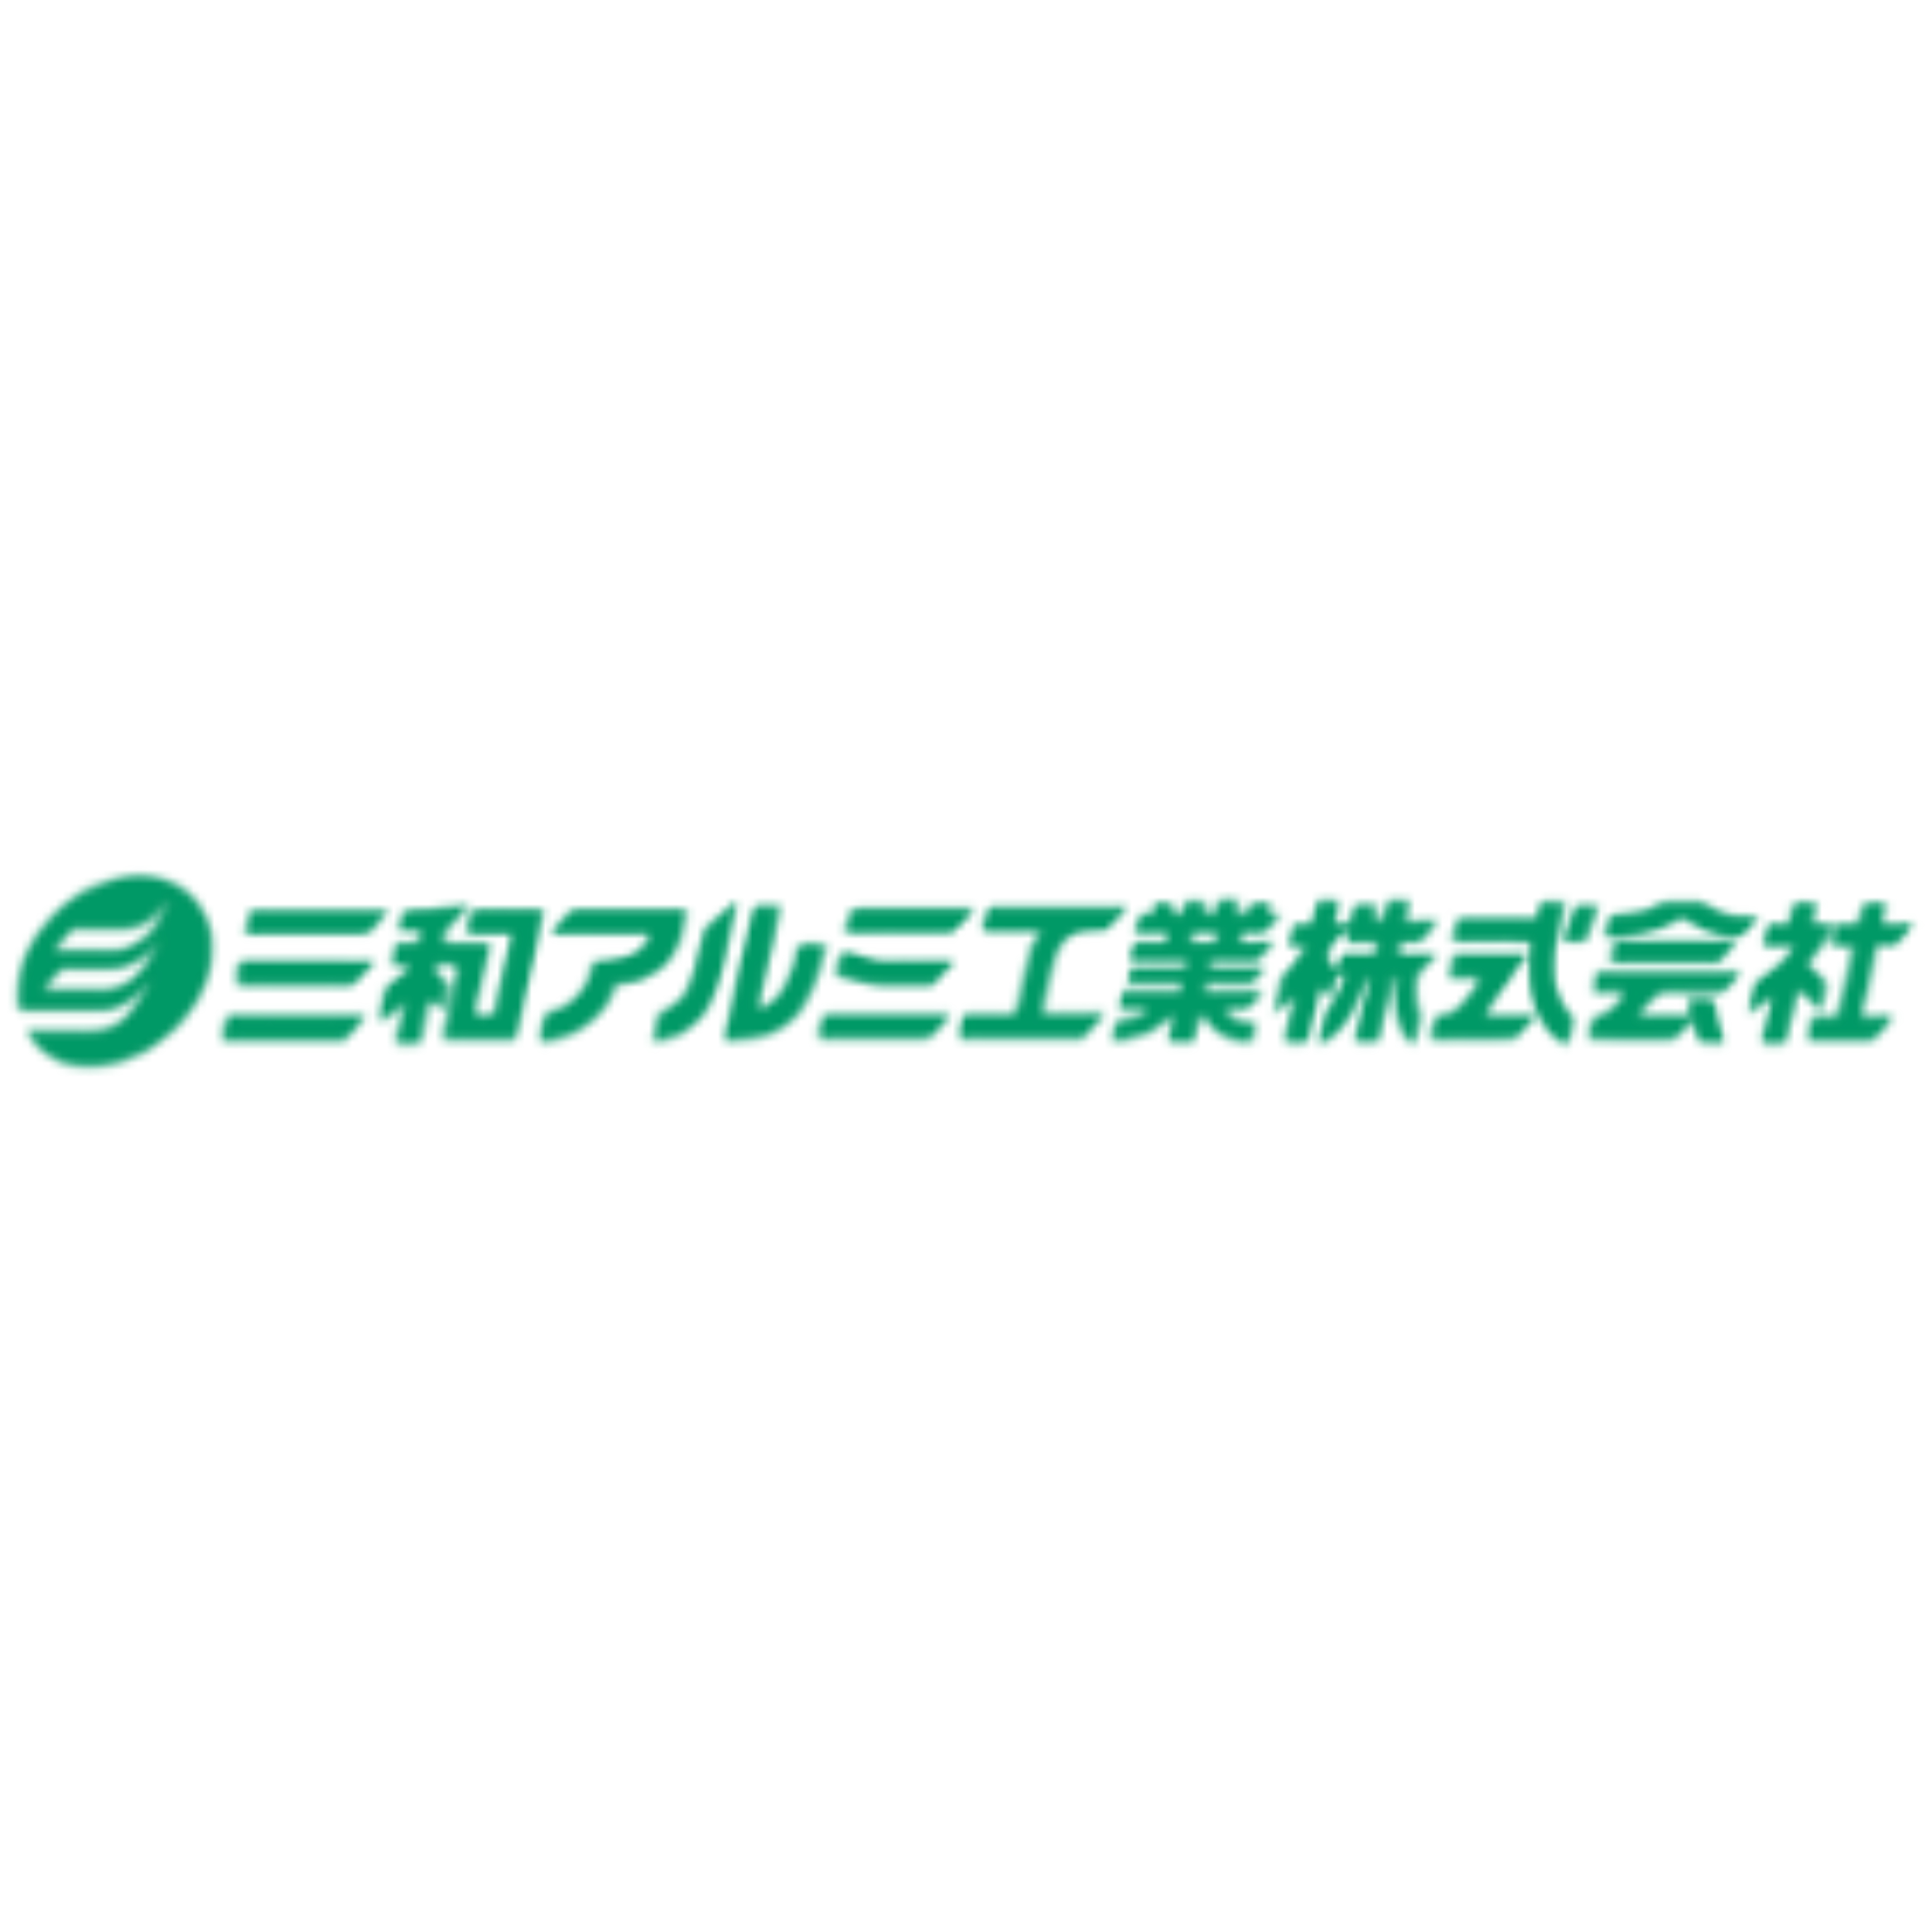 三和アルミ工業株式会社 - Railing Contractor - 豊島区 - 03-5952-0221 Japan | ShowMeLocal.com